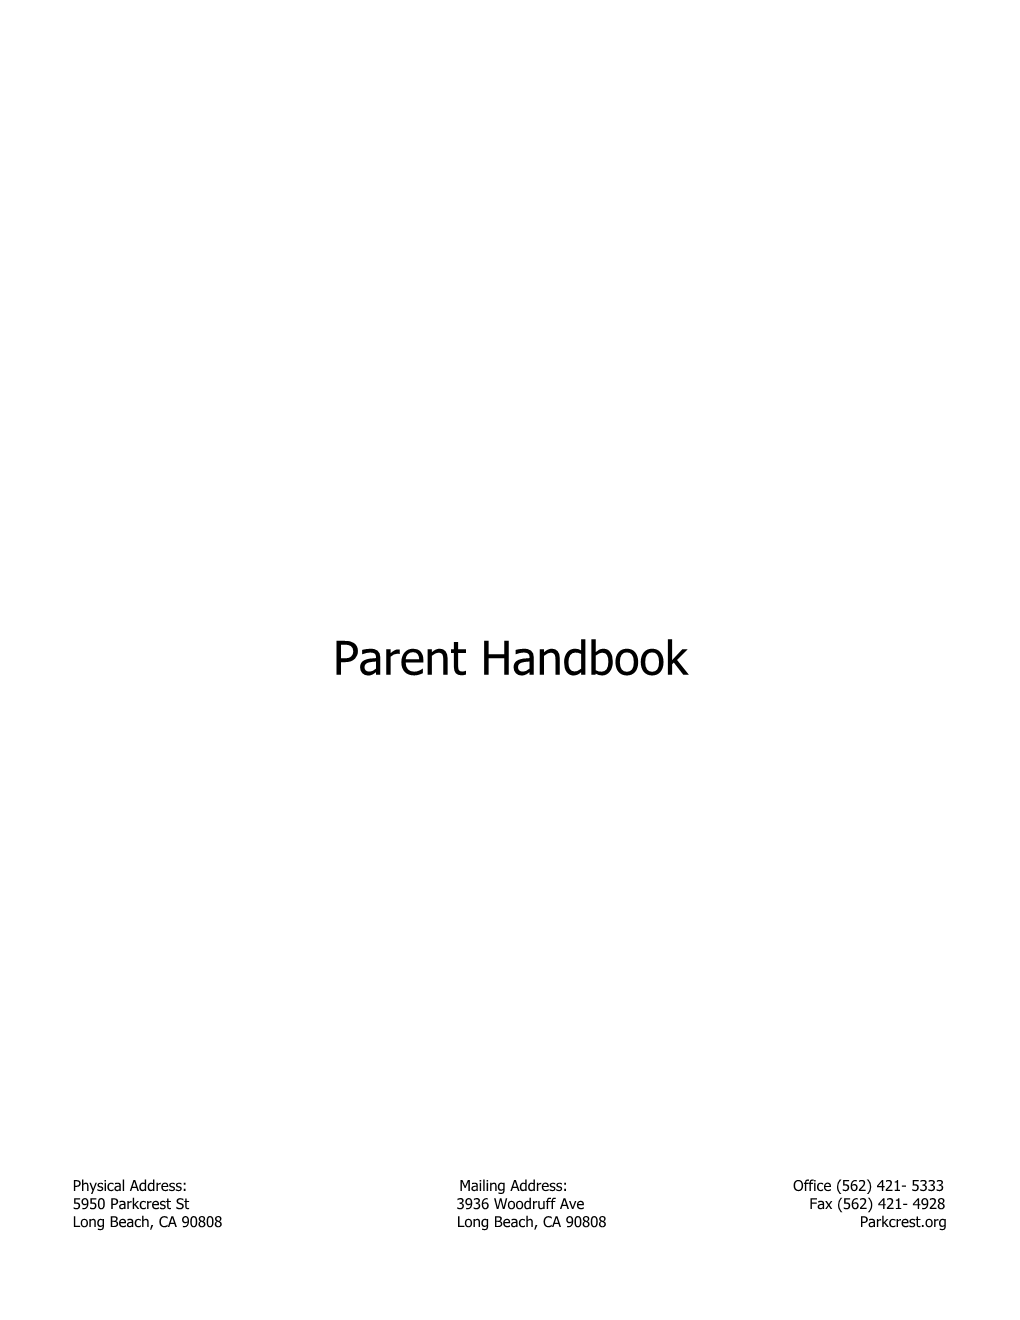 Parkcrest Early Childhood School 15 16 Parent Handbook